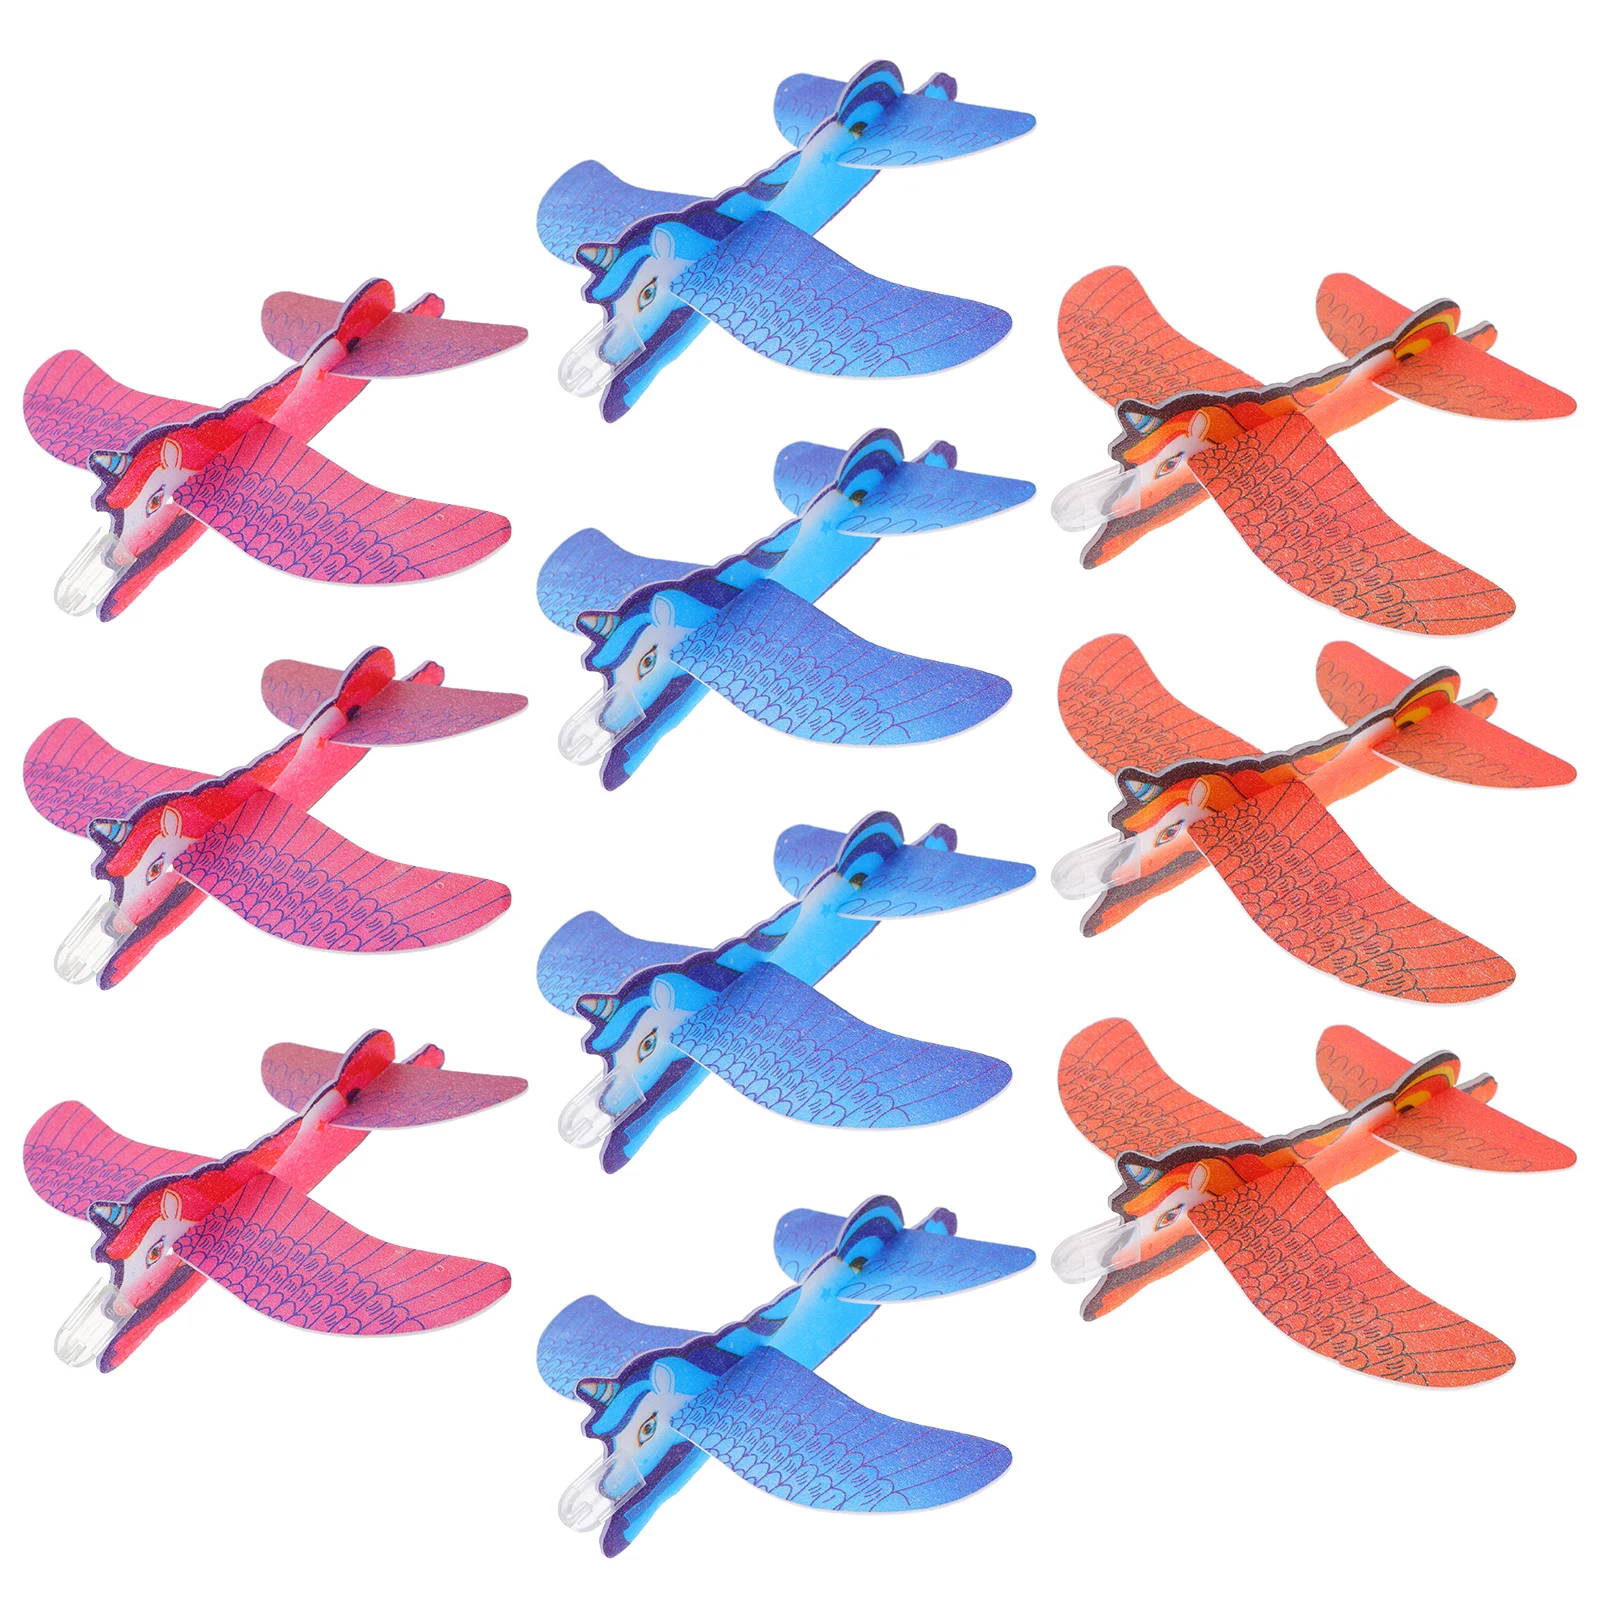 

Единорог самолет игрушки мальчик планер самолеты детские вечеринки сувениры День рождения украшения